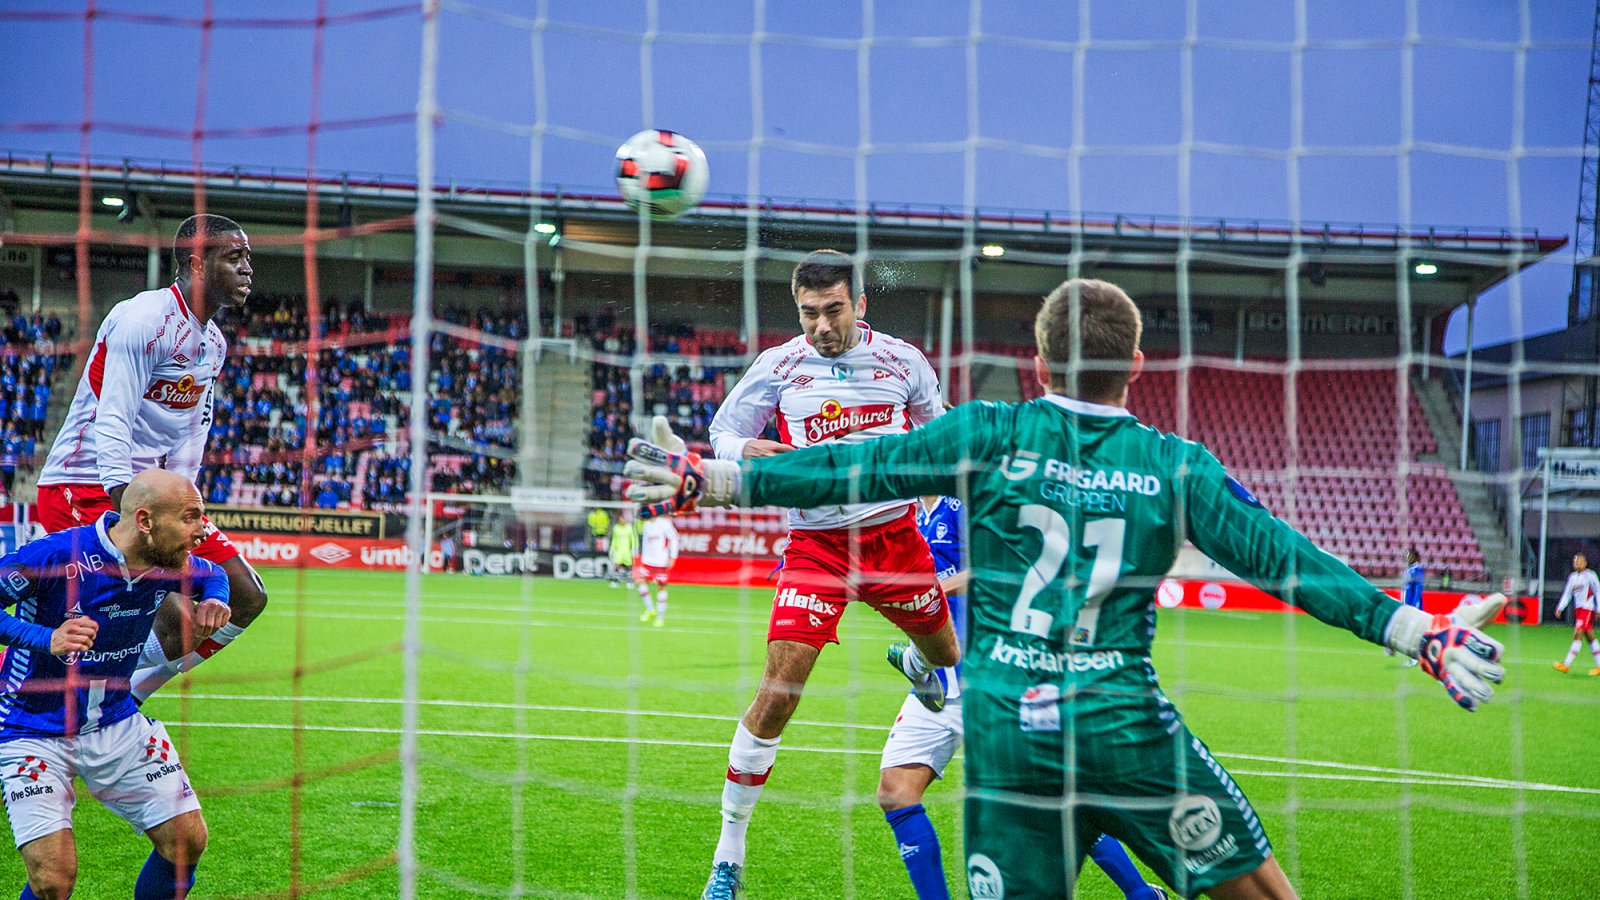 Sanel Kapidzic scorer mot Sarpsborg 08 i treningskamp 2016